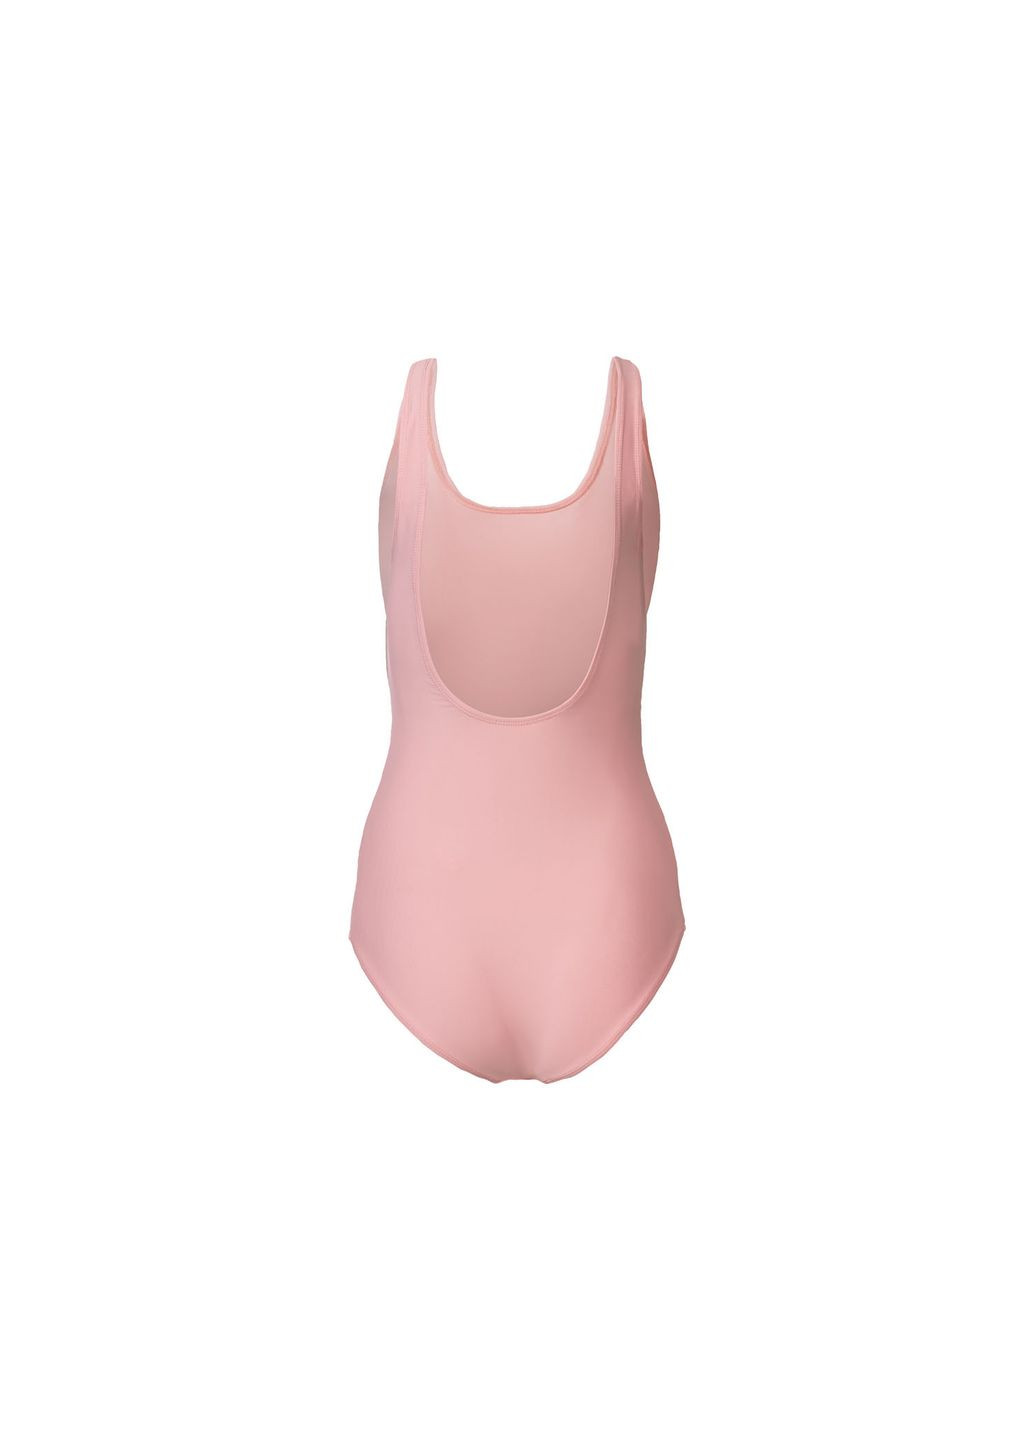 Розовый купальник слитный на подкладке для женщины creora® 381383 бикини Esmara